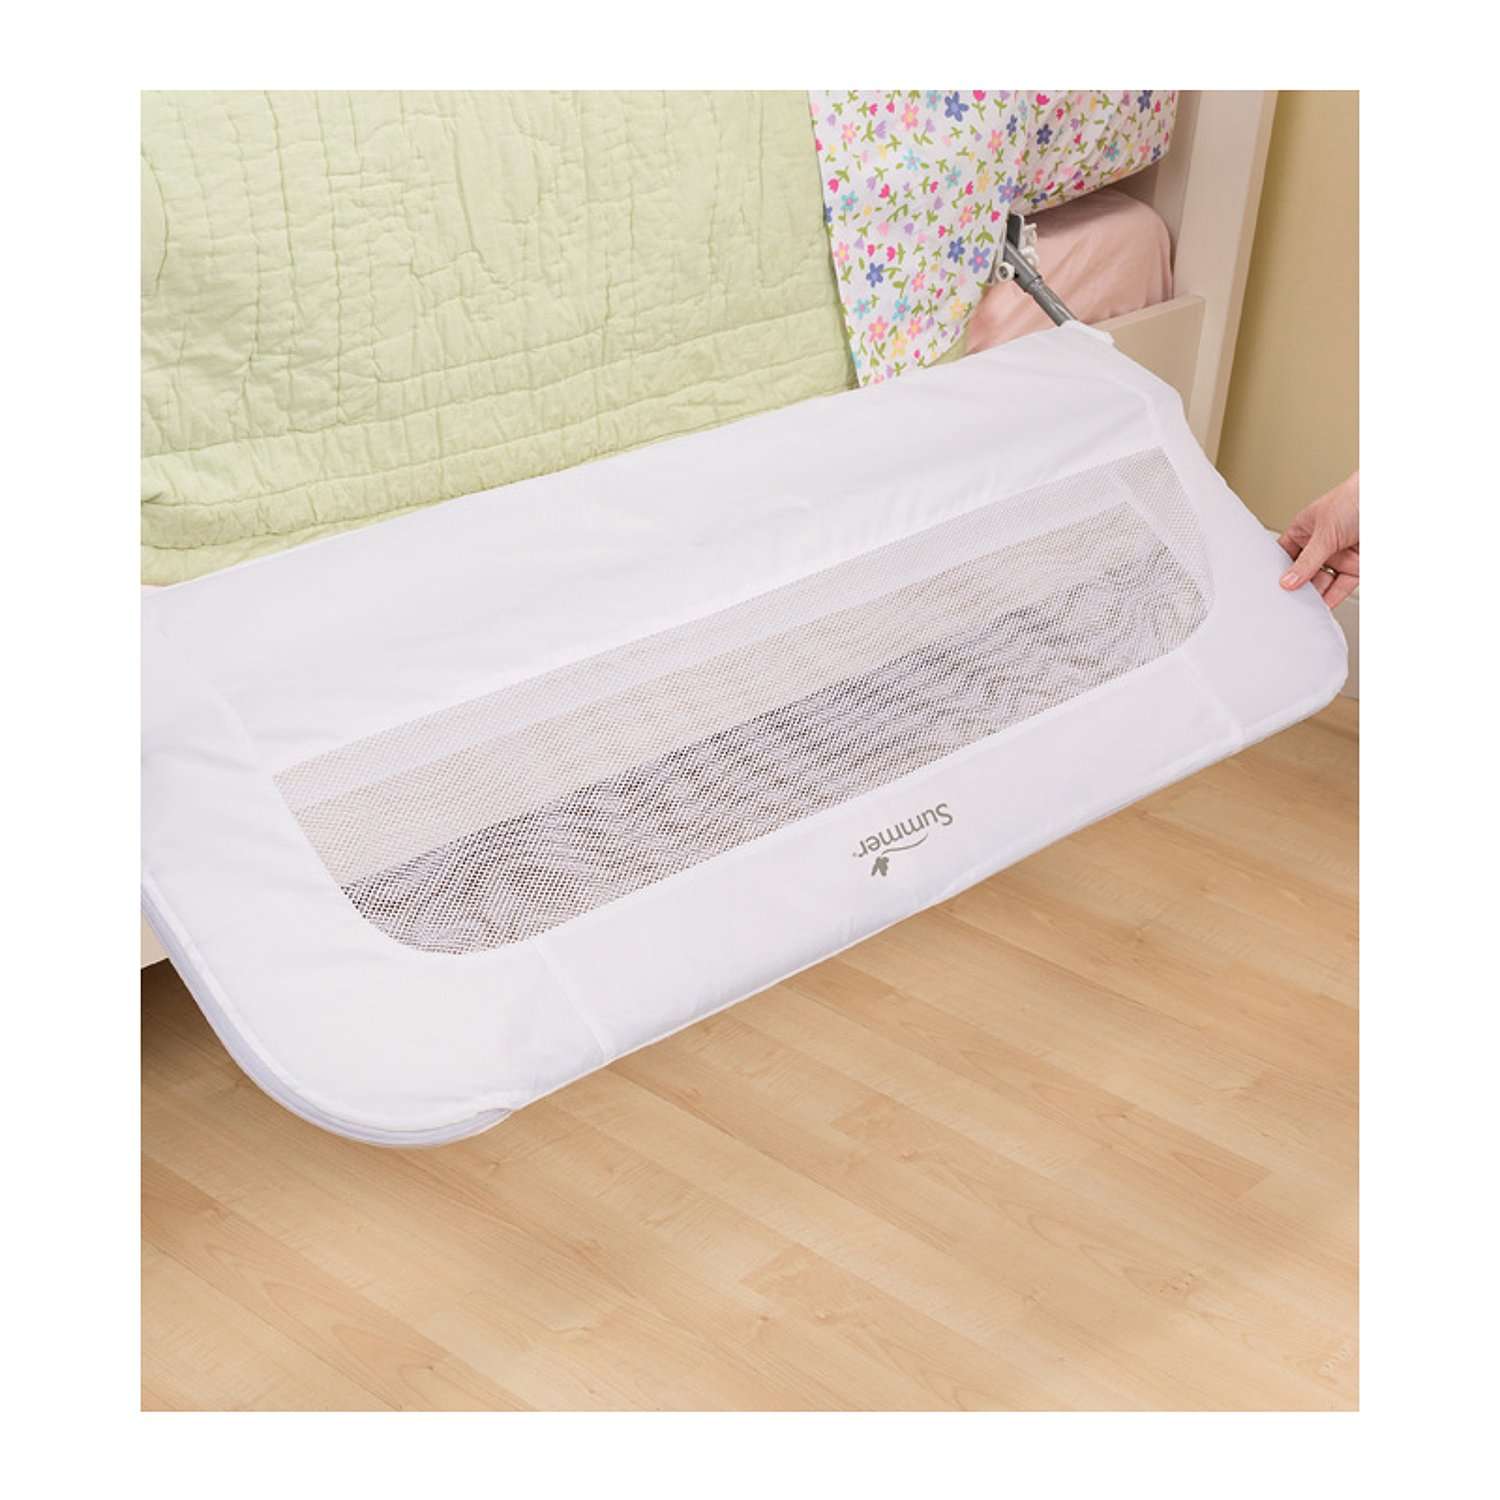 Ограничитель для кровати Summer Infant универсальный Single Fold Bedrail белый - фото 3